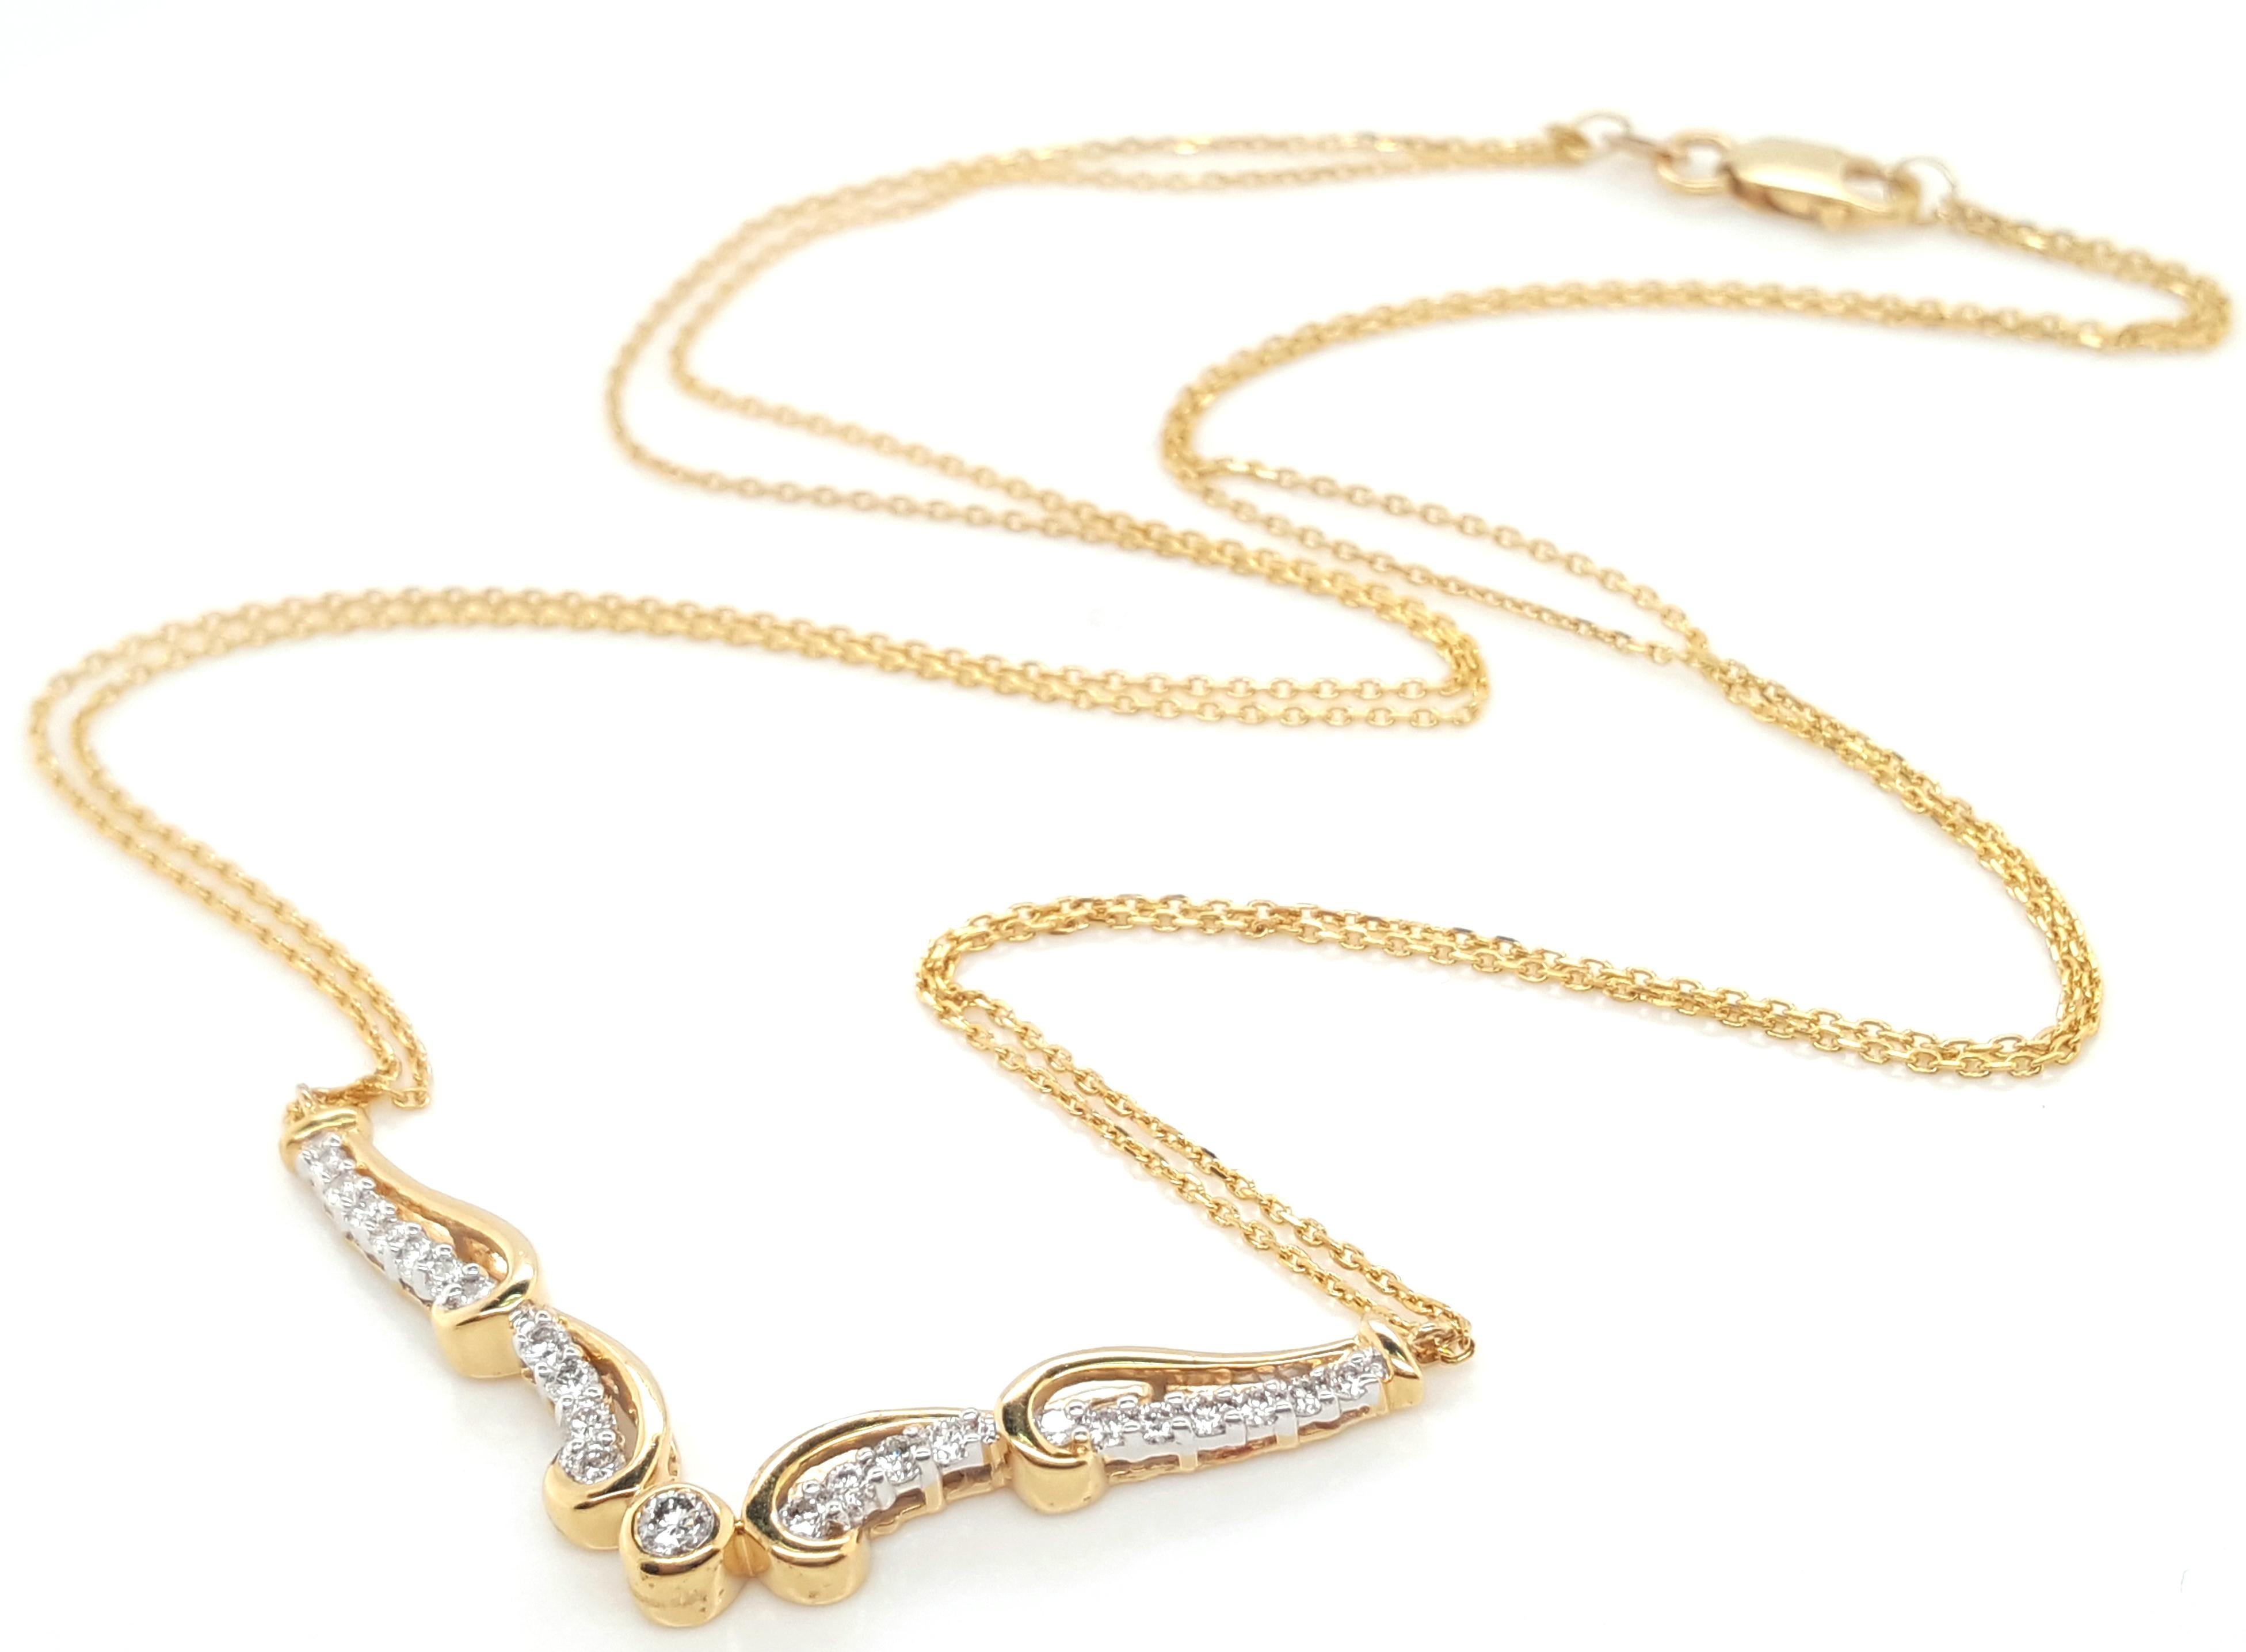  18 Karat Gelbgold Diamant-Halskette mit Doppelkette  Die klassisch schöne Halskette hat folgende Merkmale  eine V-förmige Linie aus Diamanten, die an zwei zarten Gliederketten aus 18 Karat Gelbgold mit Karabinerverschluss hängt. Es sind 23 runde